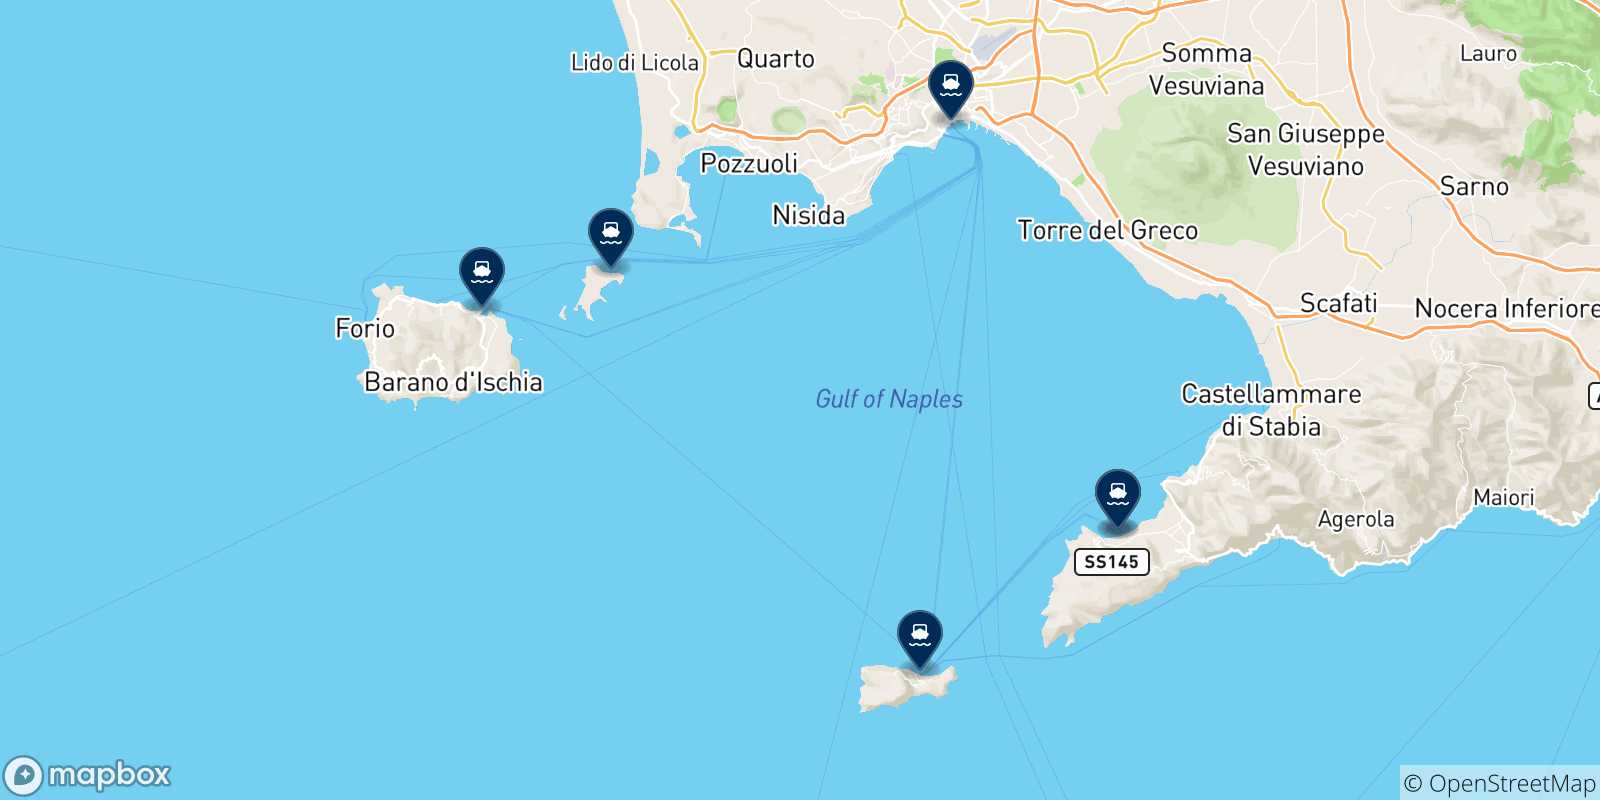 Mappa delle possibili rotte tra Sorrento e l'Italia